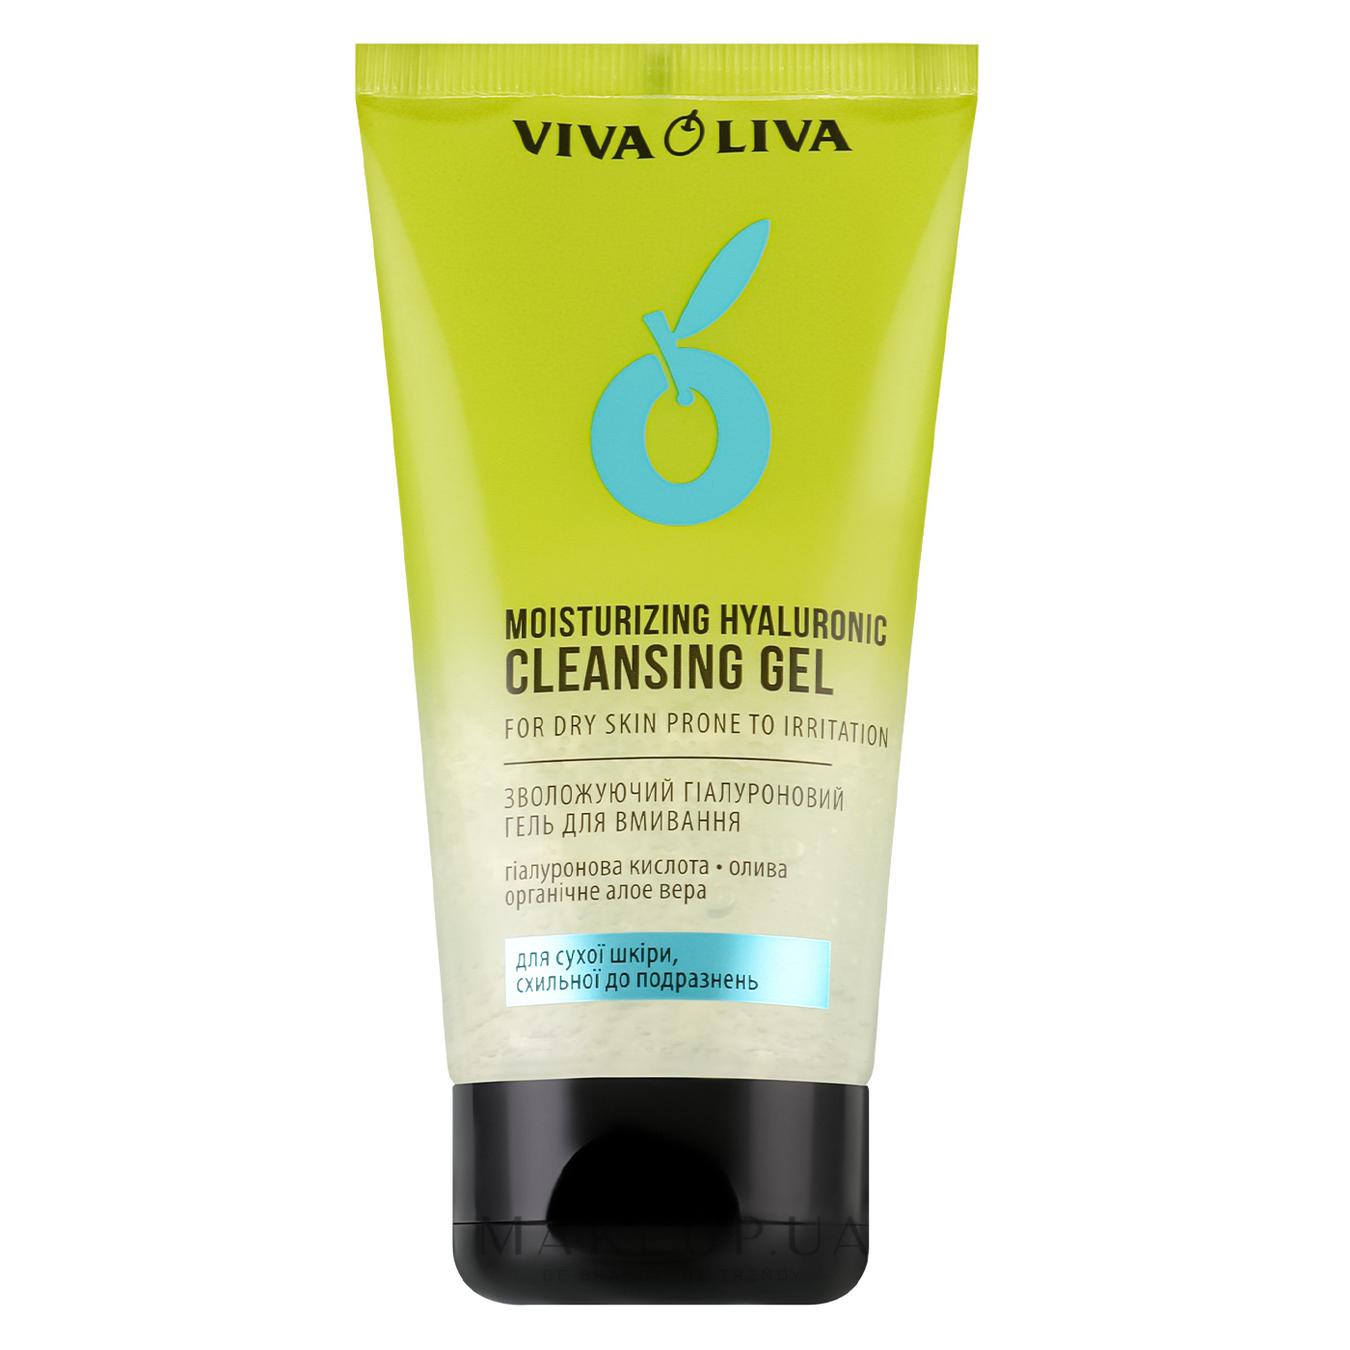 Viva oliva moisturizing hyaluronic gel for washing 150 ml